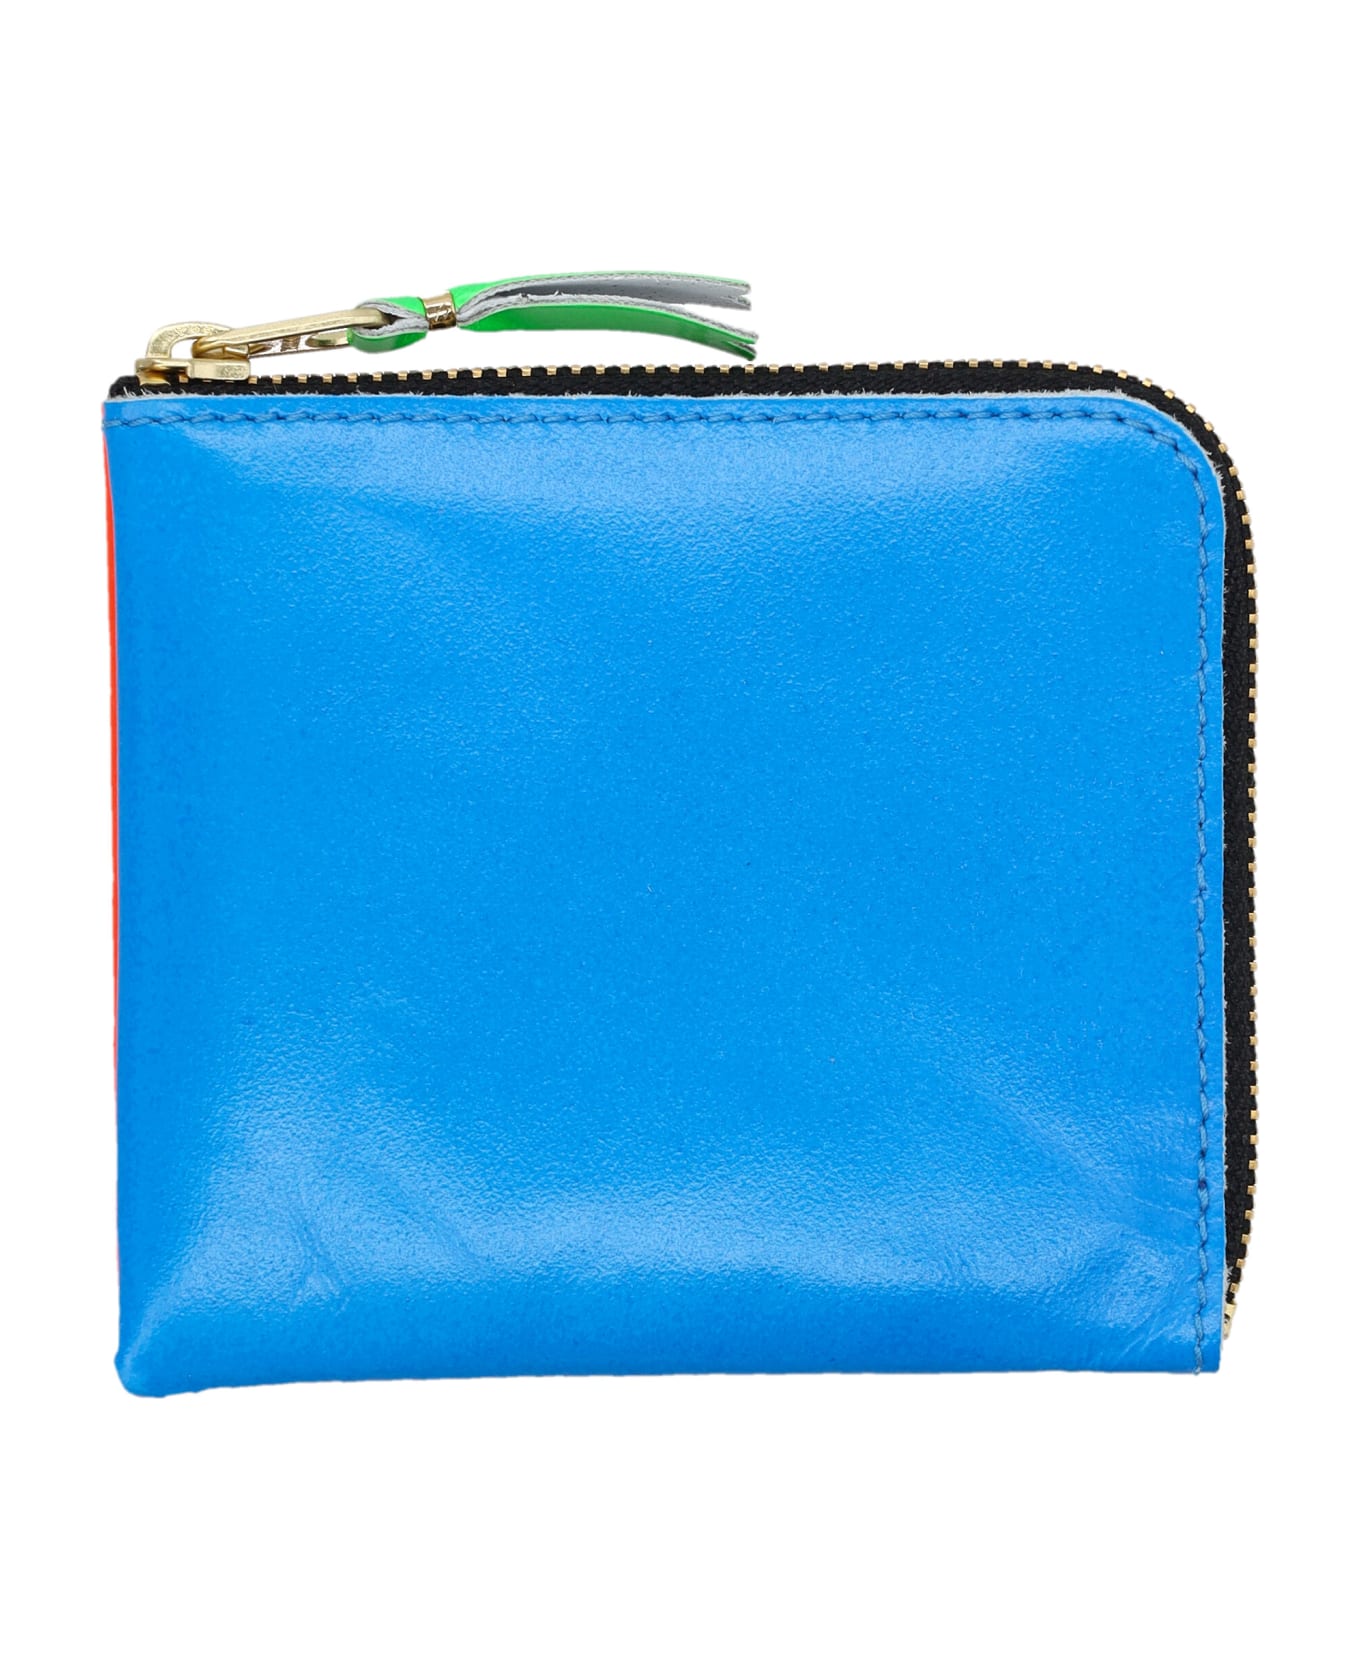 Comme des Garçons Wallet Super Fluo Small Zip Coin Wallet - BLUE ORANGE 財布